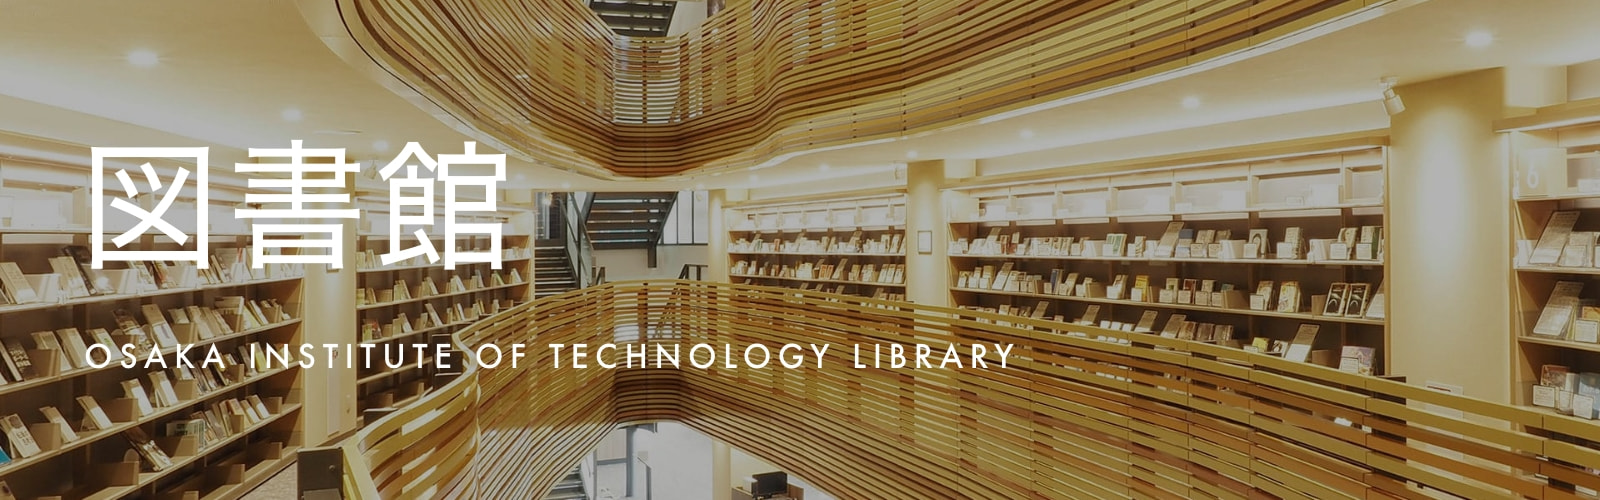 図書館 OSAKA INSTITUTE OF TECHNOLOGY LIBRARY